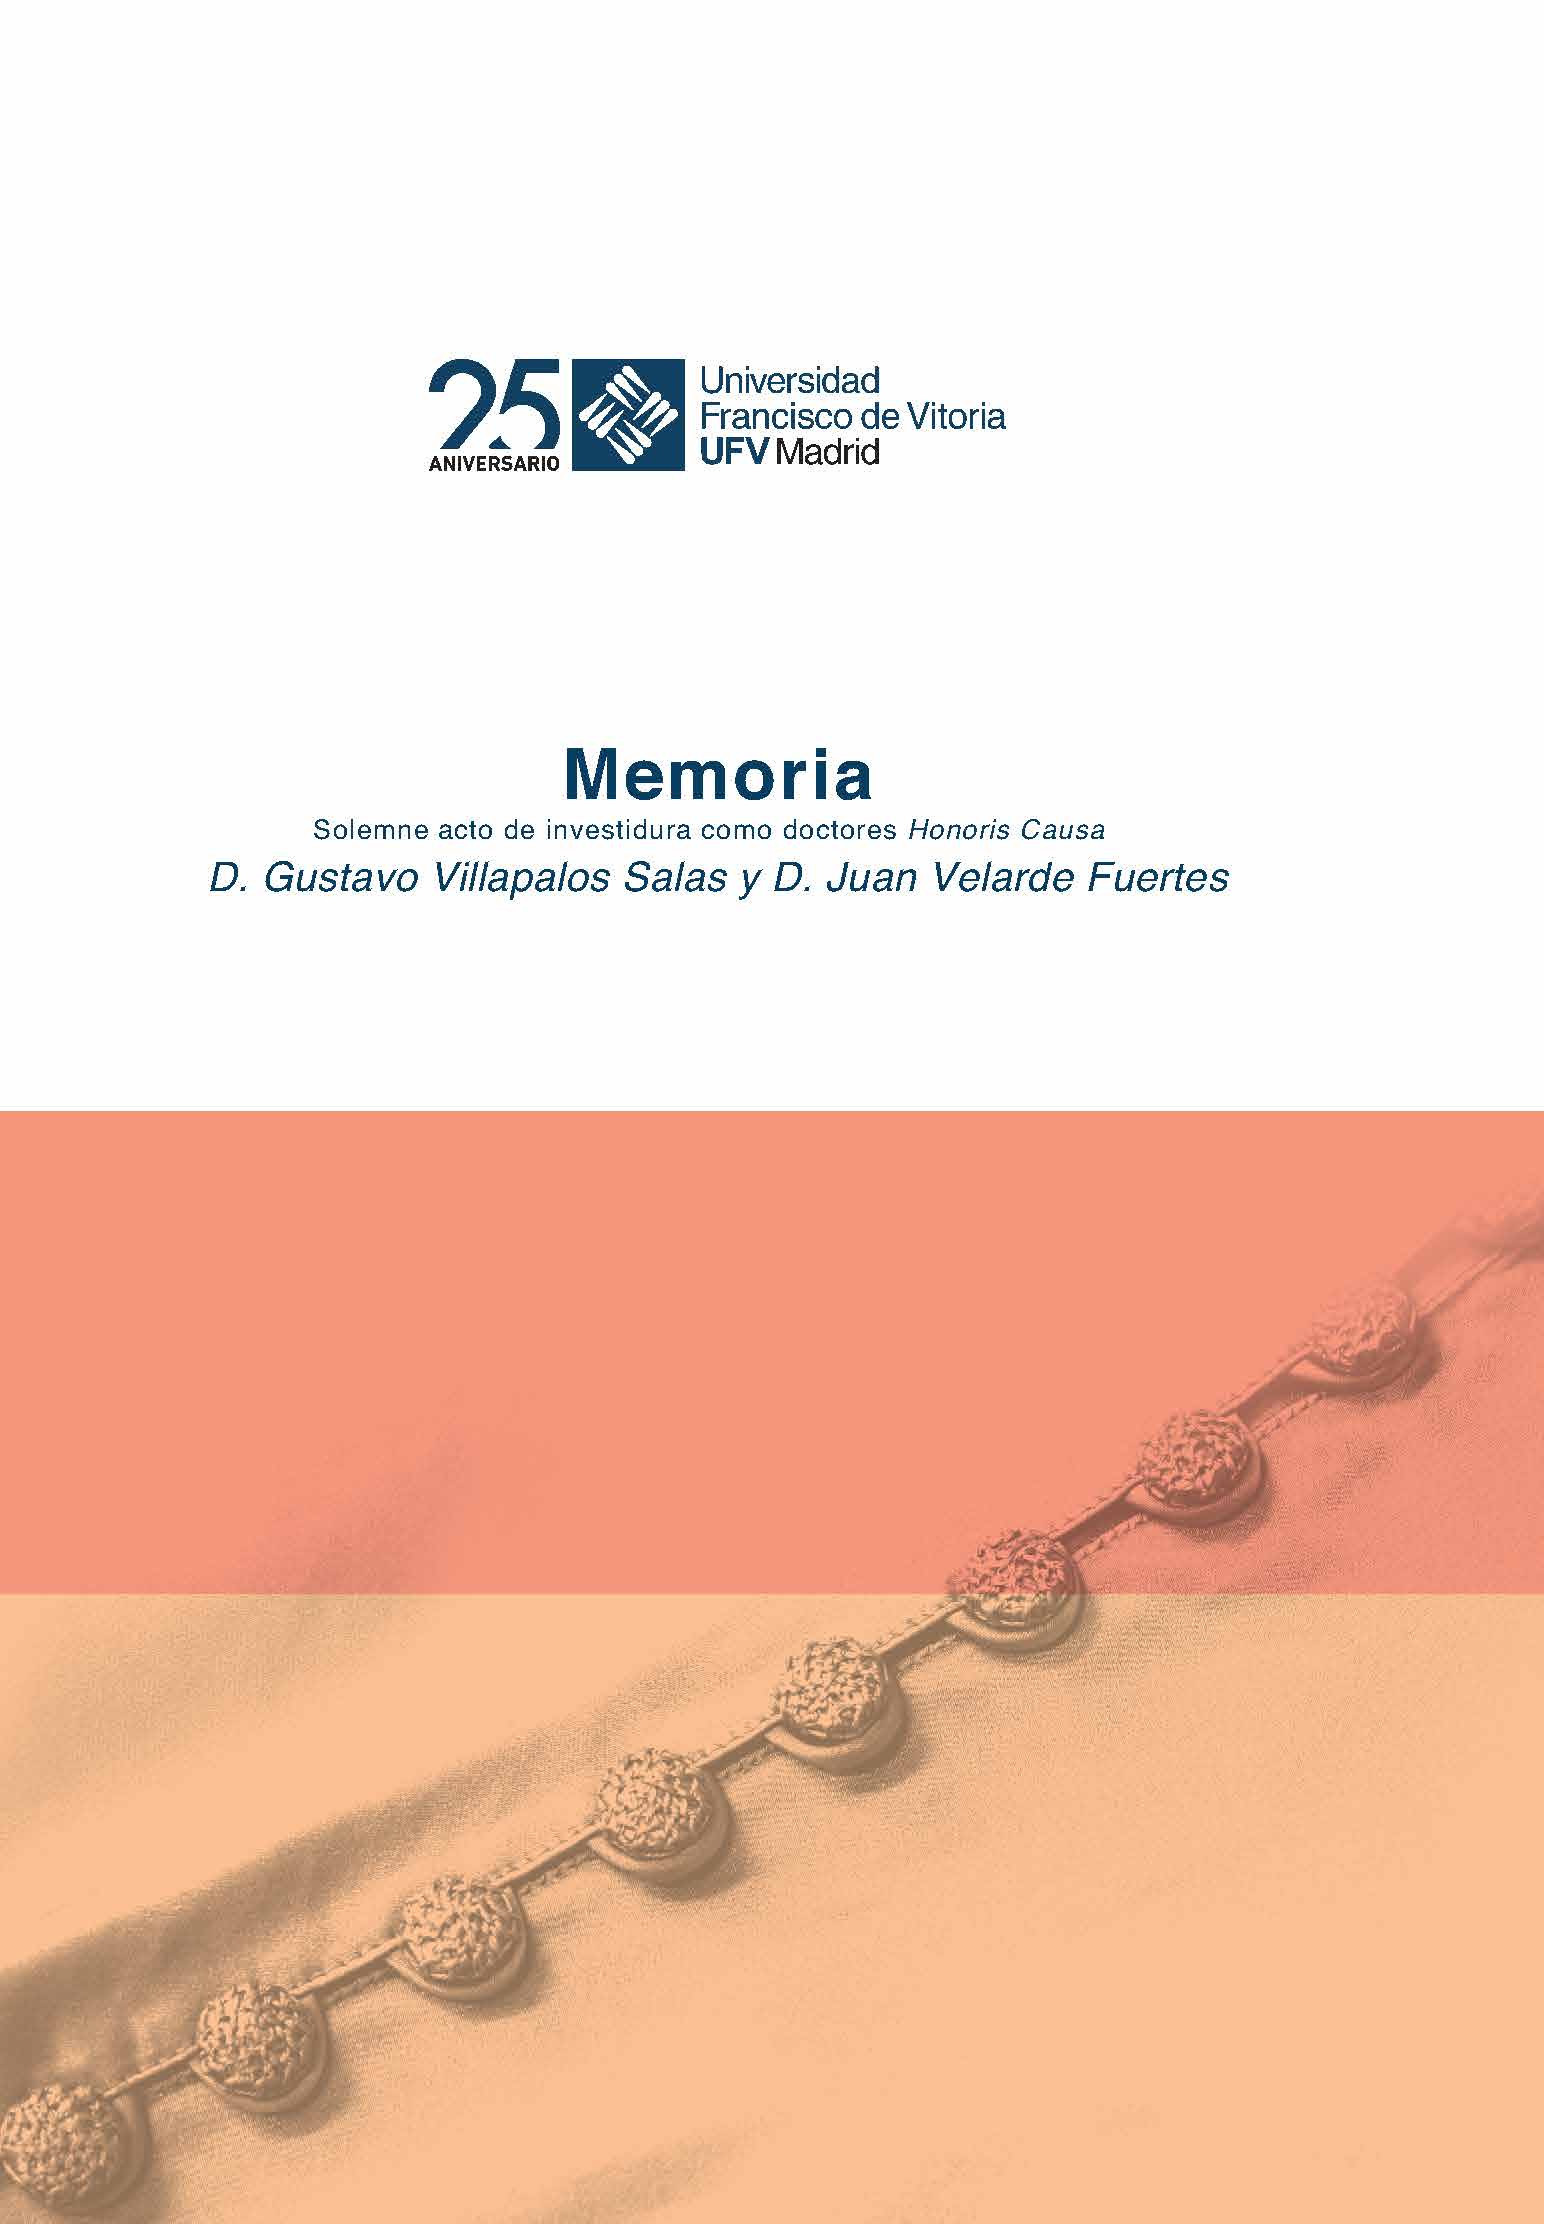 Imagen de portada del libro Memoria del solemne acto académico de investidura como doctores honoris causa de los excelentísimos señores D. Gustavo Villapalos Salas y D. Juan Velarde Fuertes